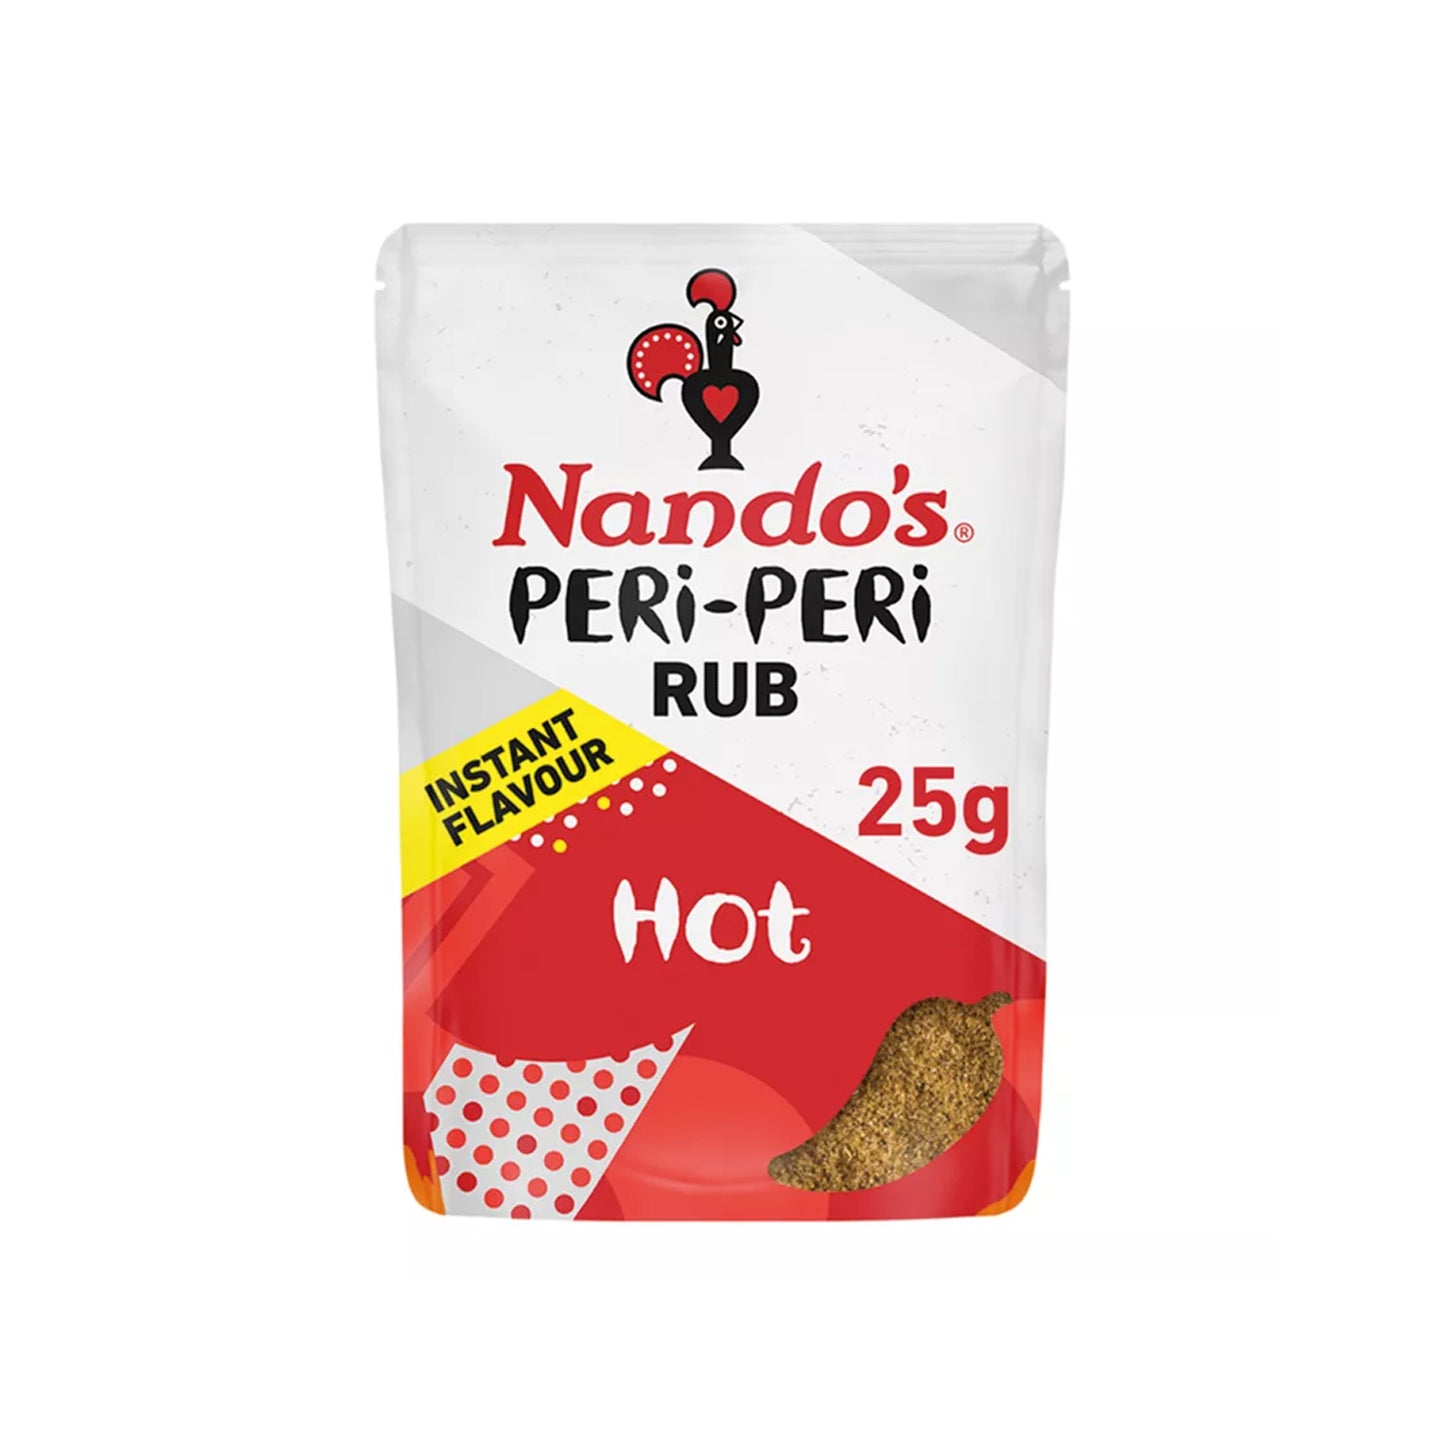 Nando's Peri-Peri Rub Hot